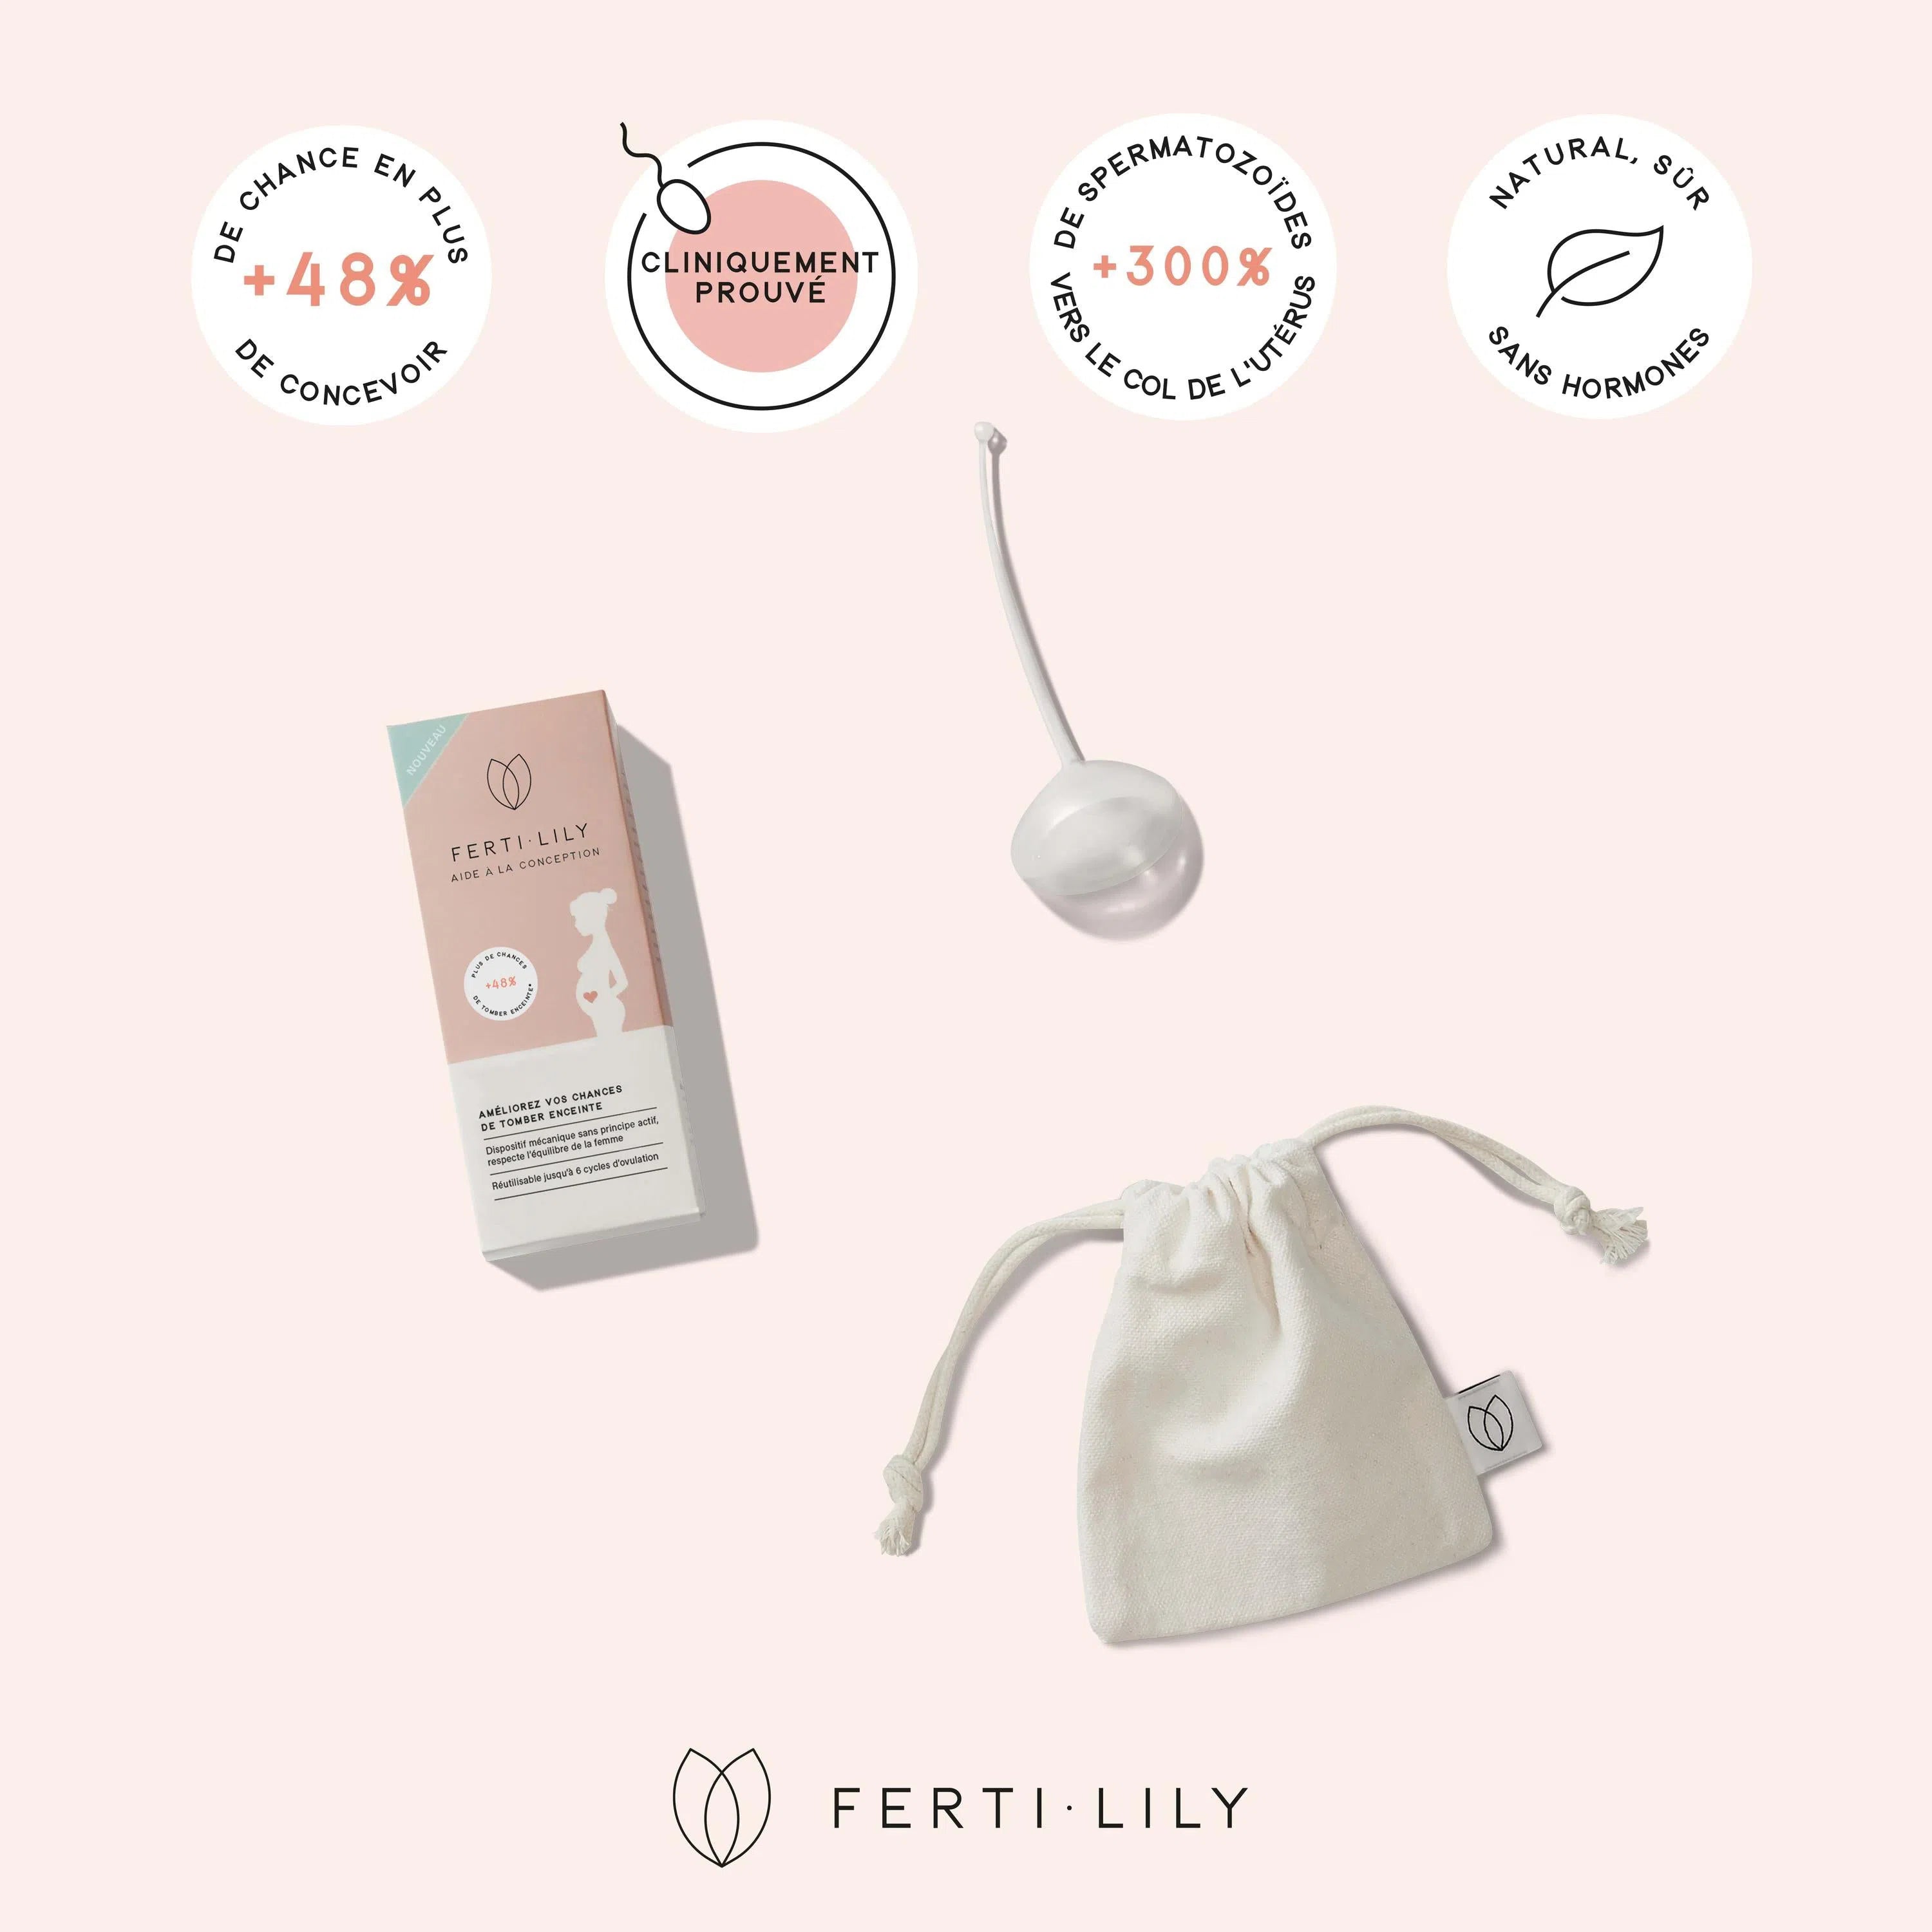 Une cup de fertilité pour tomber enceinte de Fertilily à côté de sa boîte avec les avantages